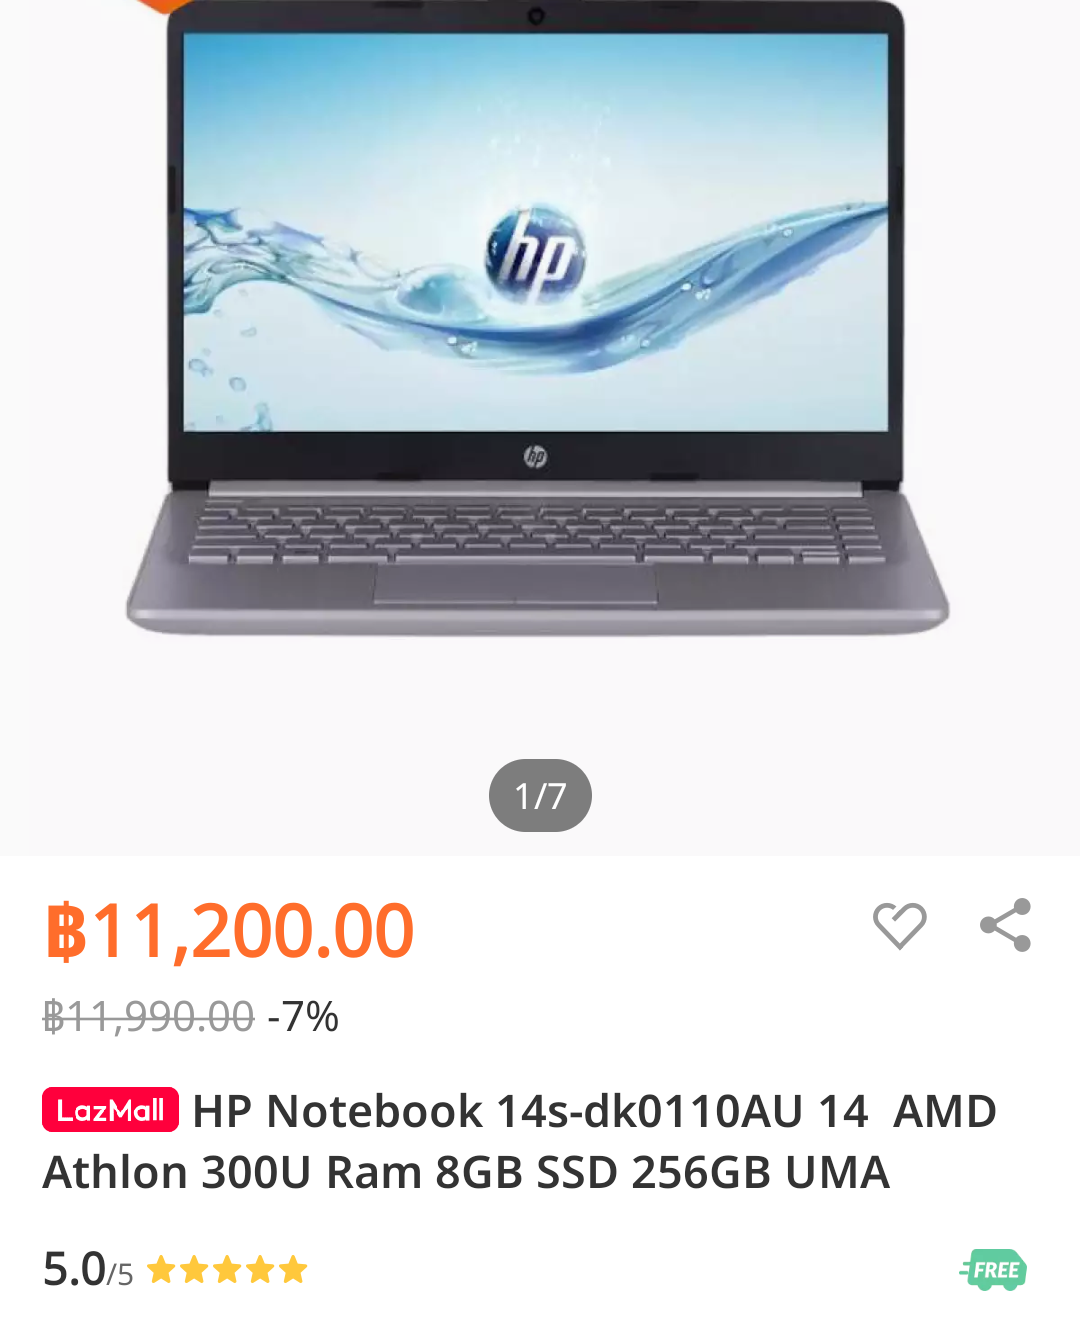 ช่วยแนะนำหน่อย อยากได้ Notebook ราคาไม่เกิน 15,000 บาท - Pantip